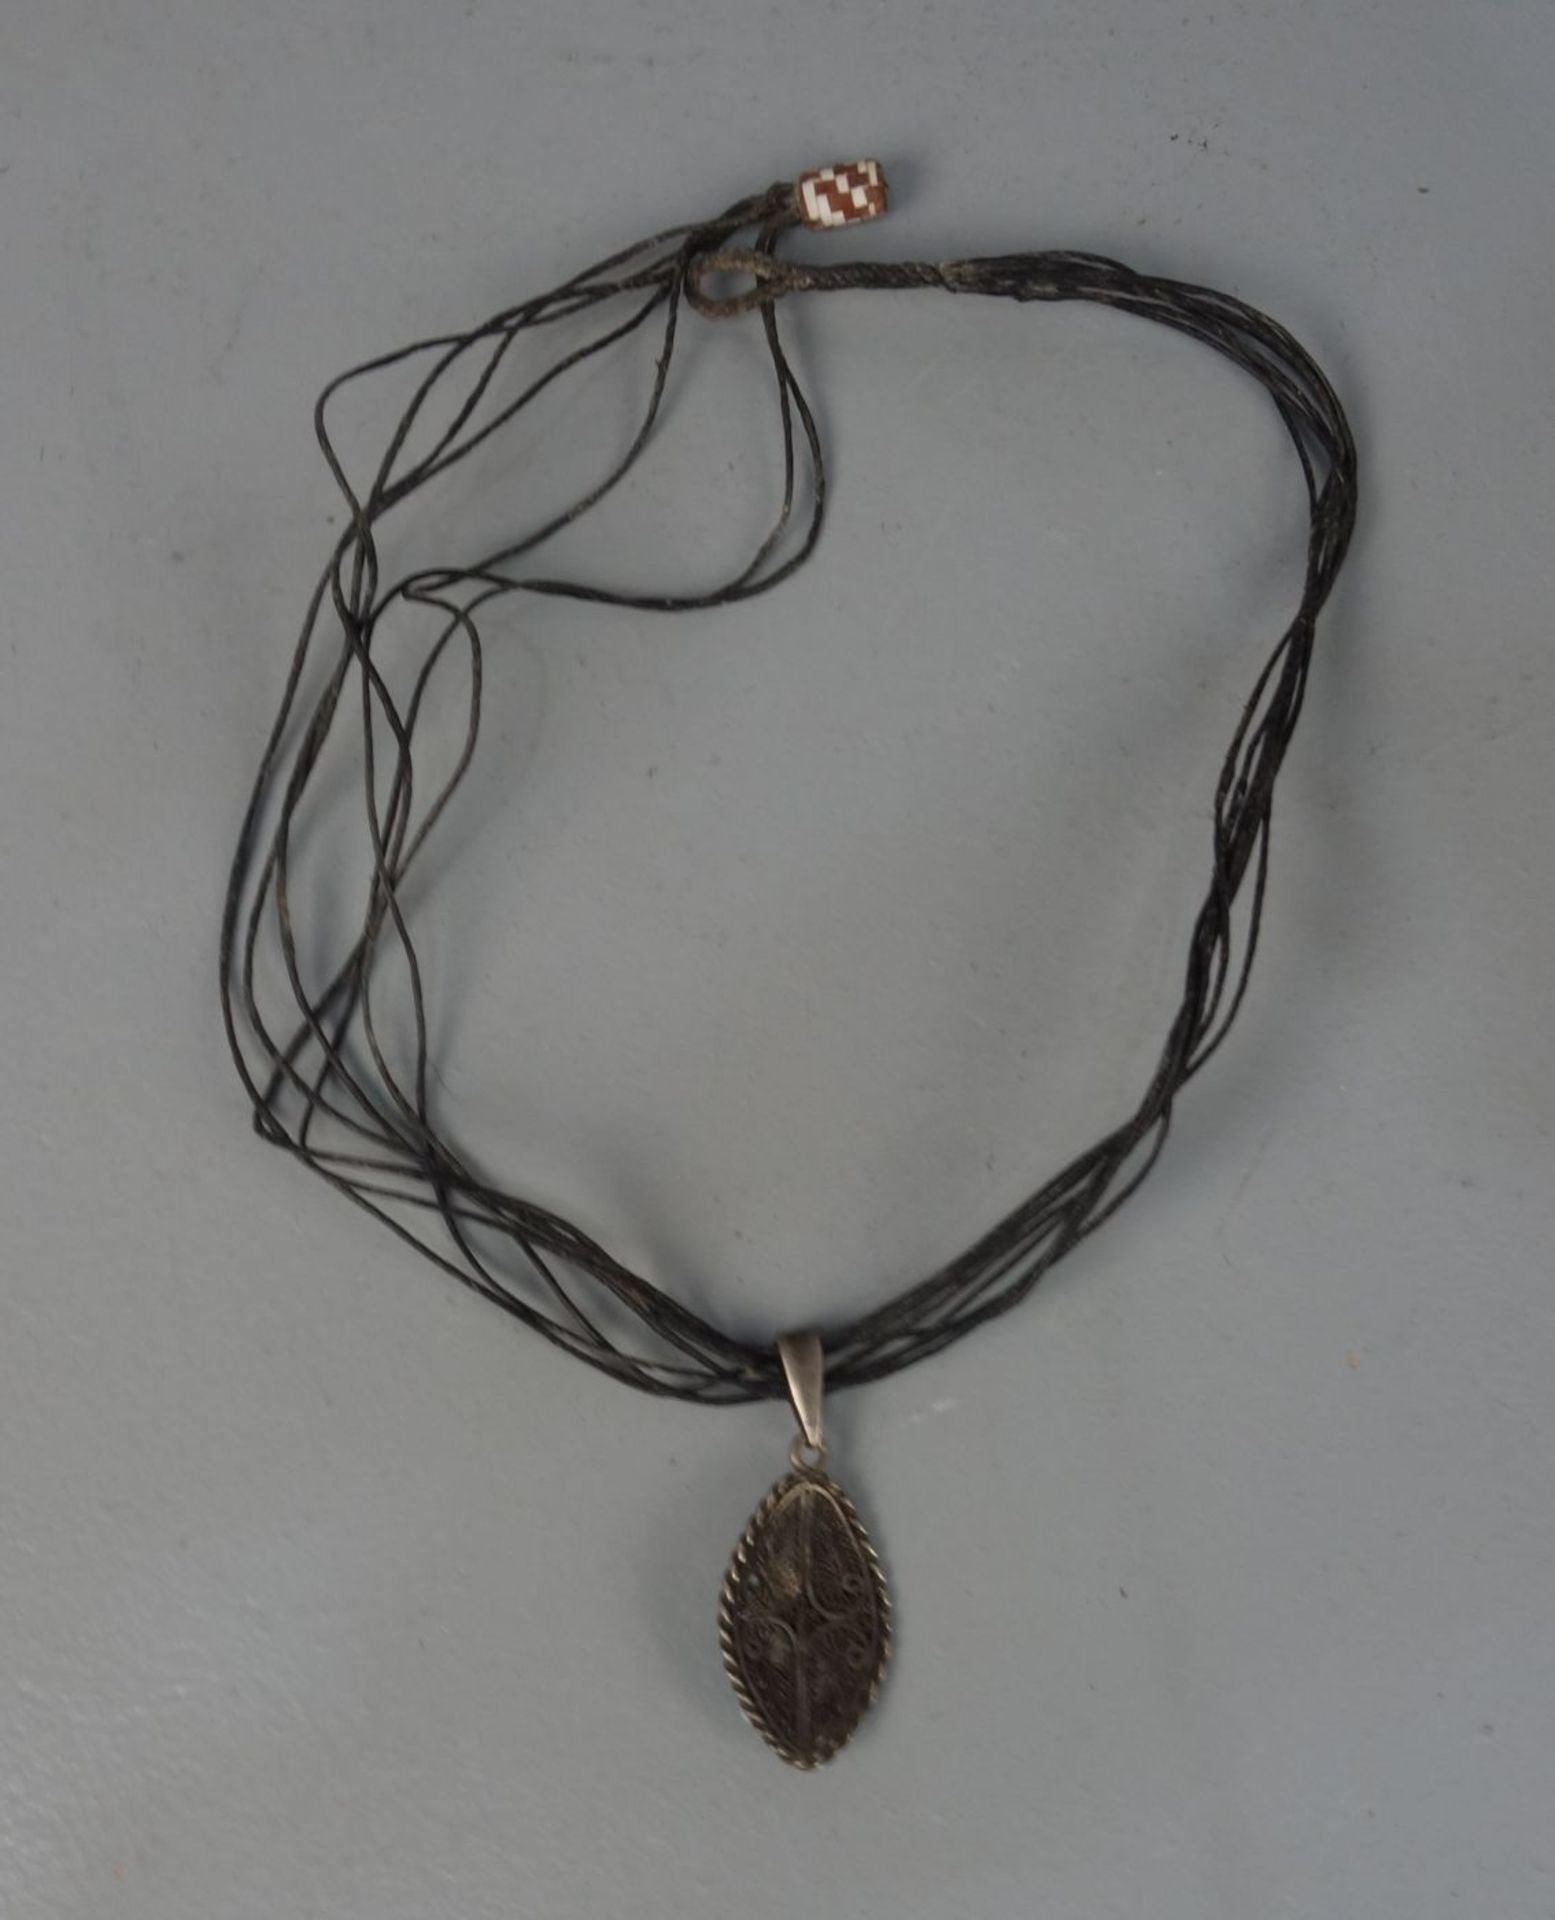 BERBER-SCHMUCK: KETTE / oriental necklace, Essaouria / Marokko; Leder und Silber (insgesamt 10,5 g). - Image 2 of 2